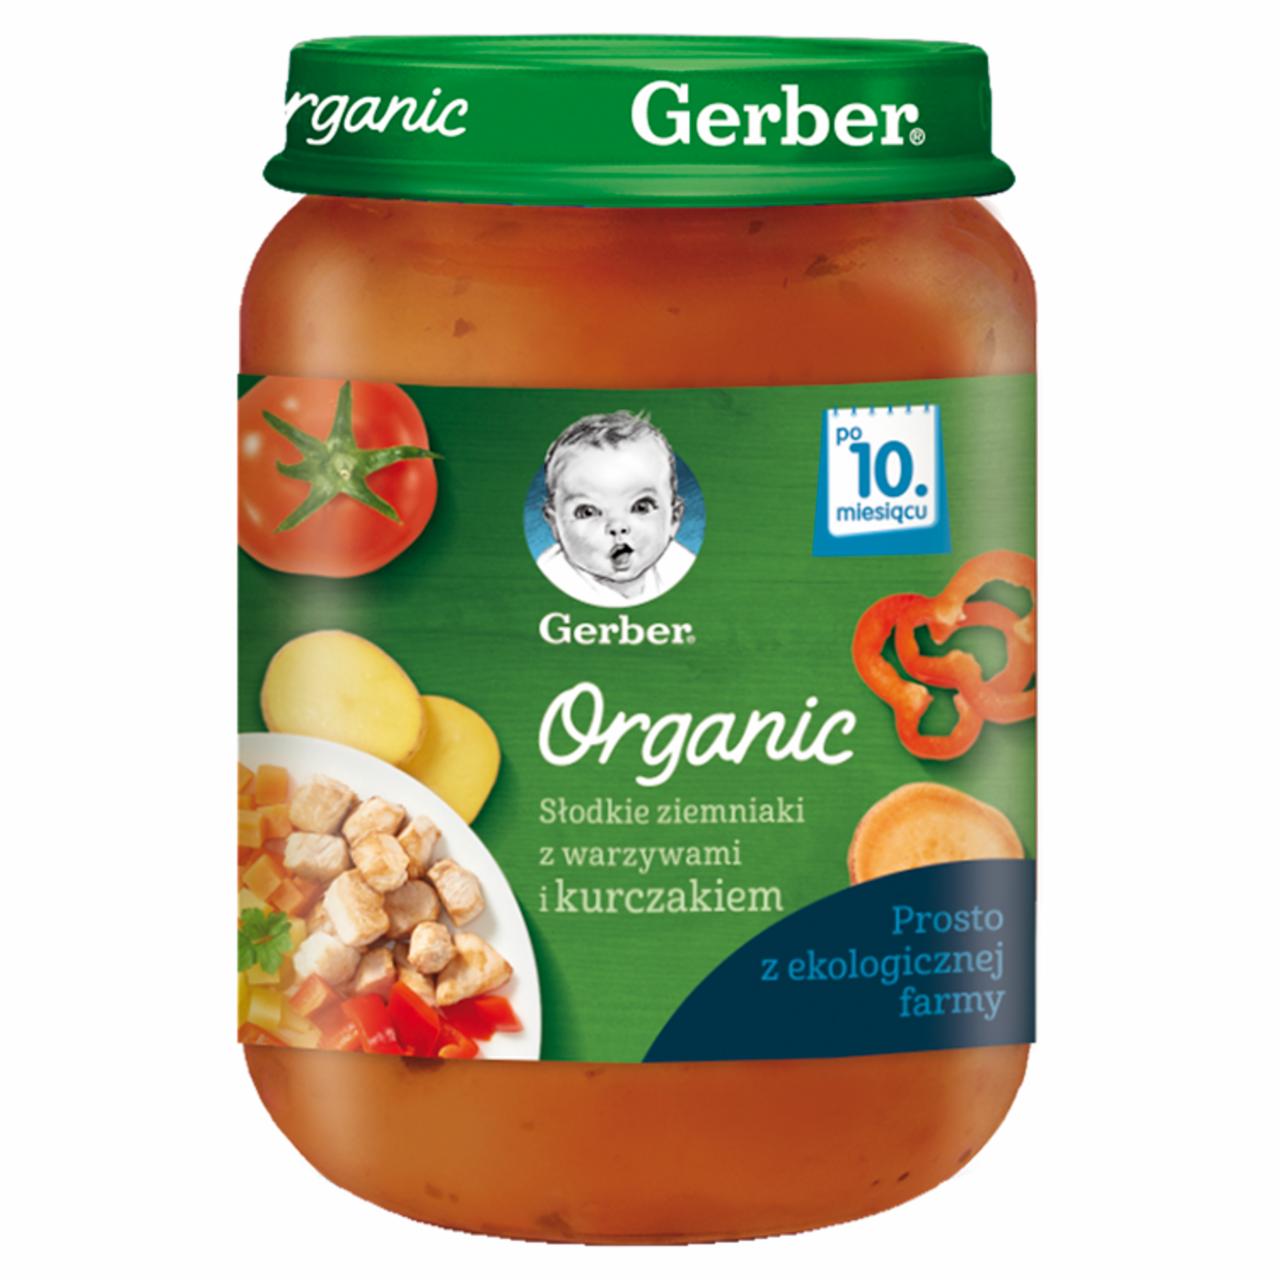 Zdjęcia - Gerber Organic Słodkie ziemniaki z warzywami i kurczakiem dla niemowląt po 10. miesiącu 190 g